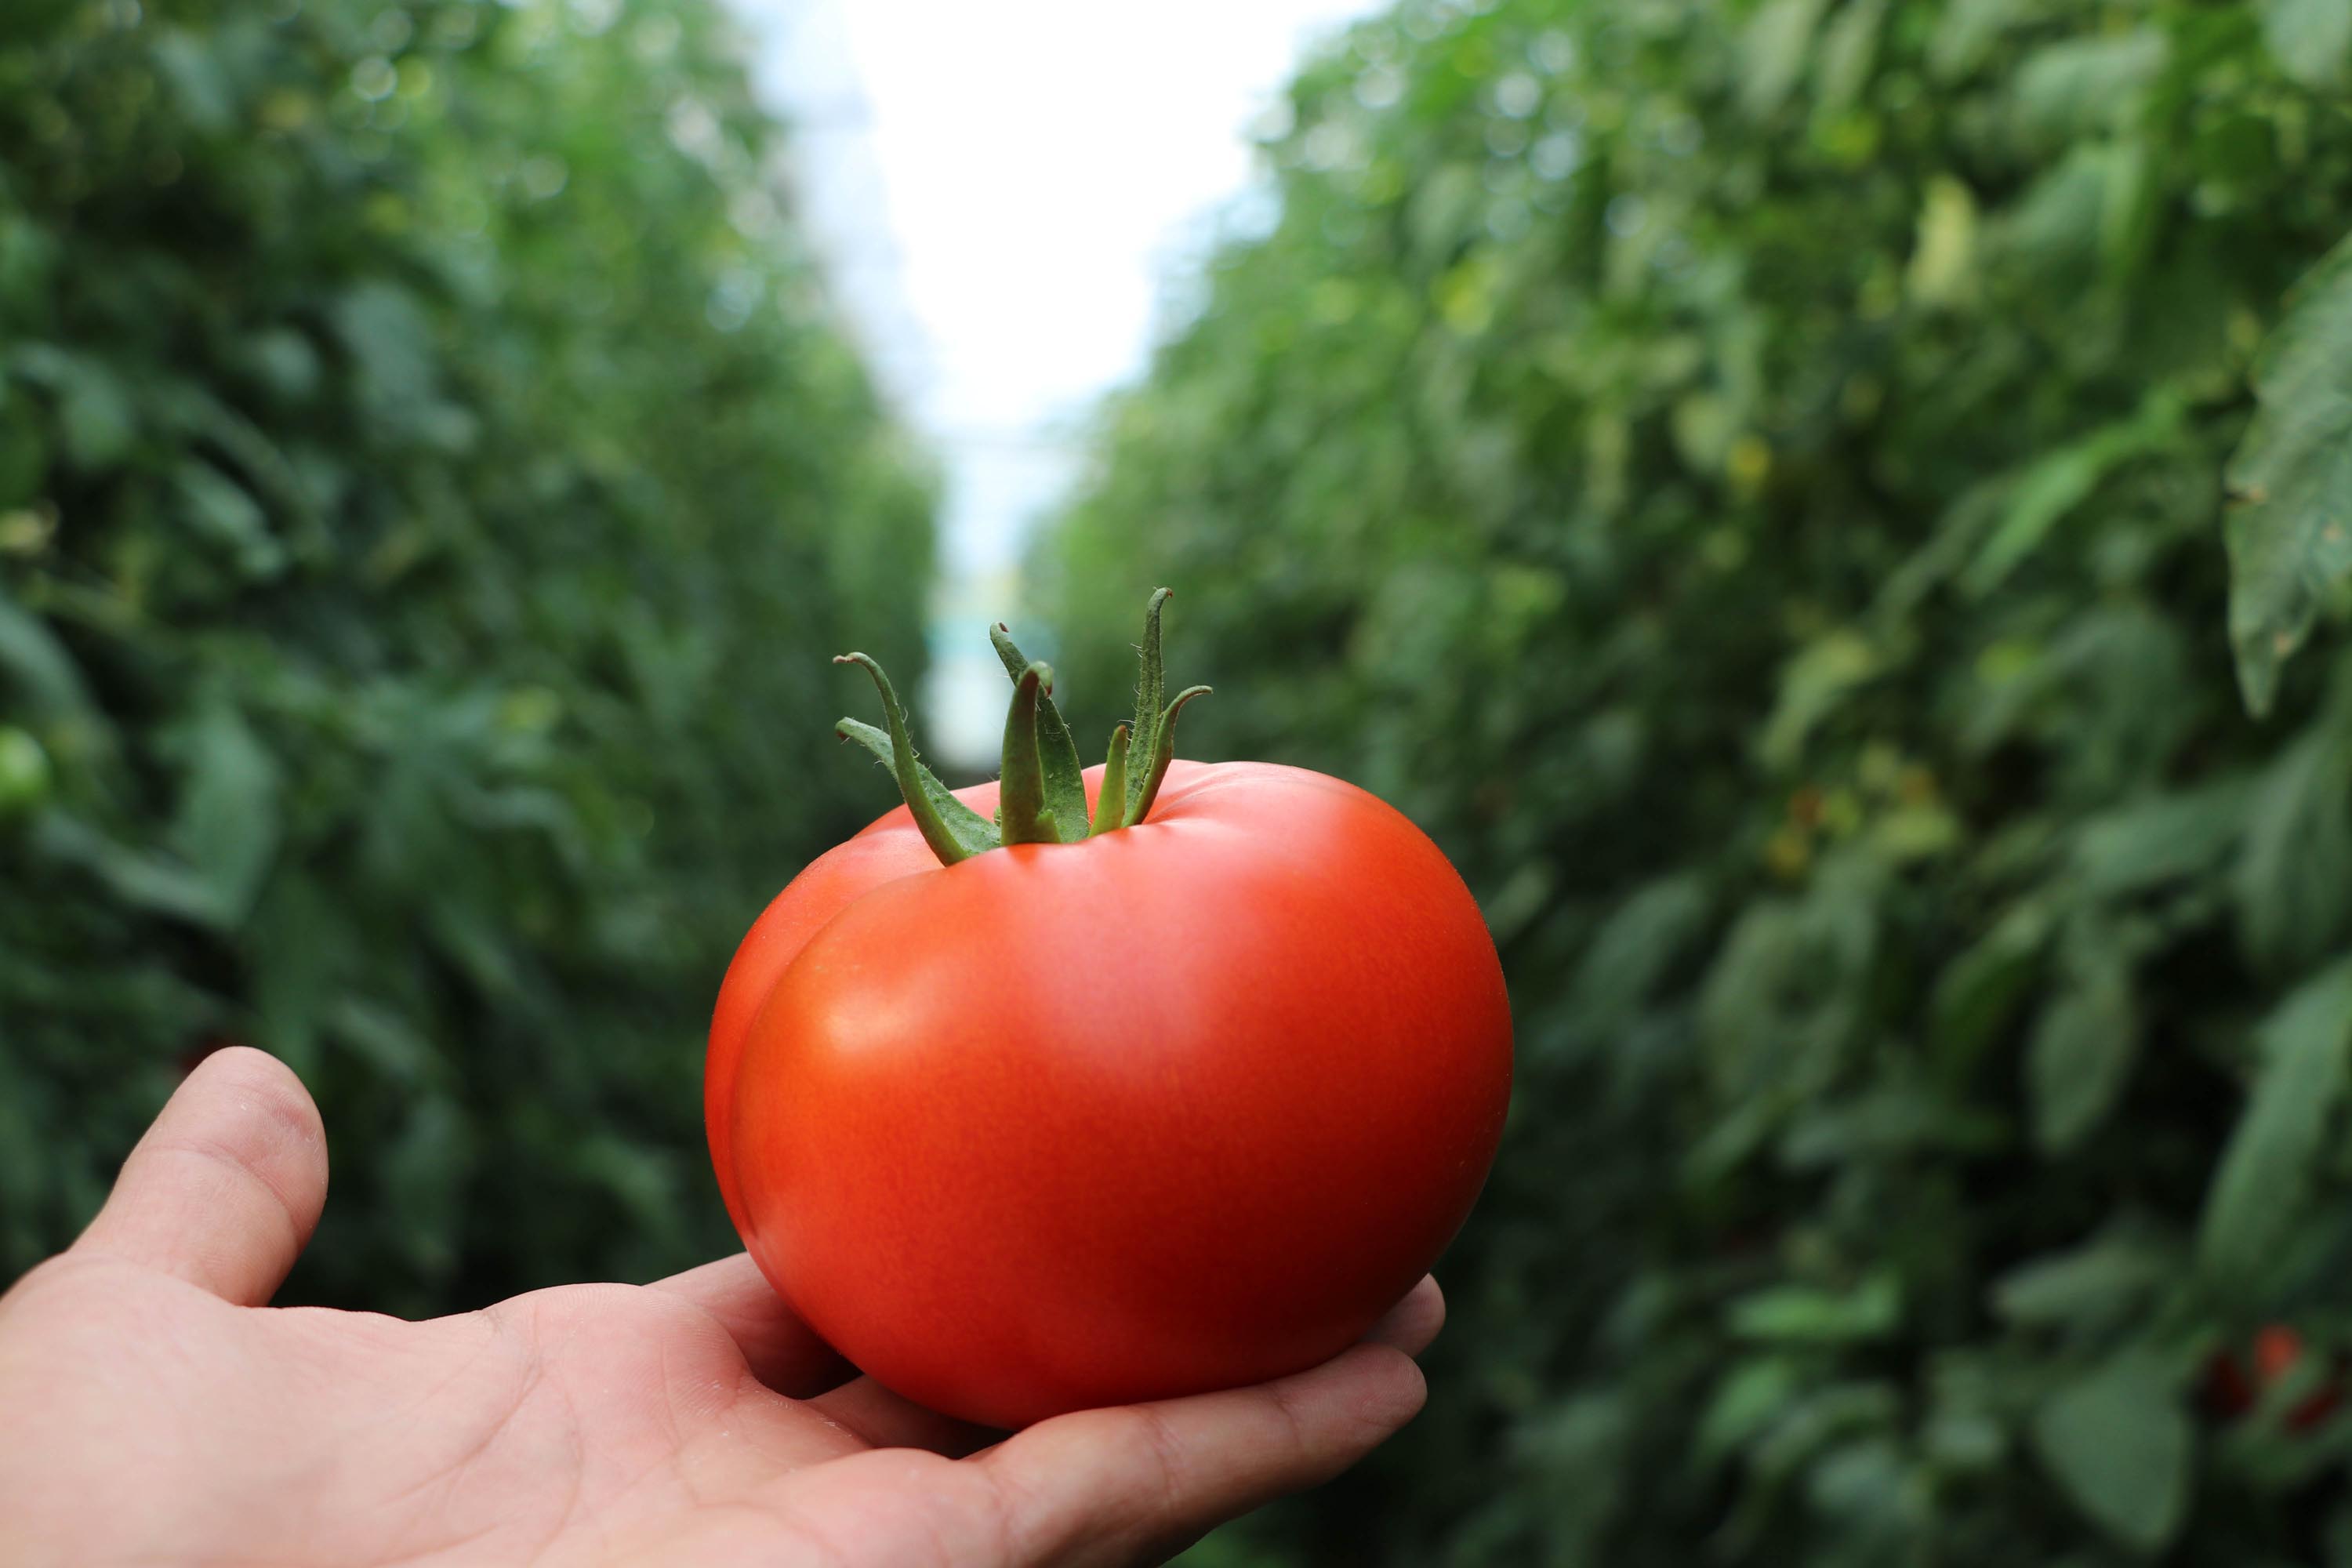 bombus-arilari-kullanilarak-yetistirilen-domateslerin-tanesi-1-kilo-geliyor-4707-dhaphoto8.jpg